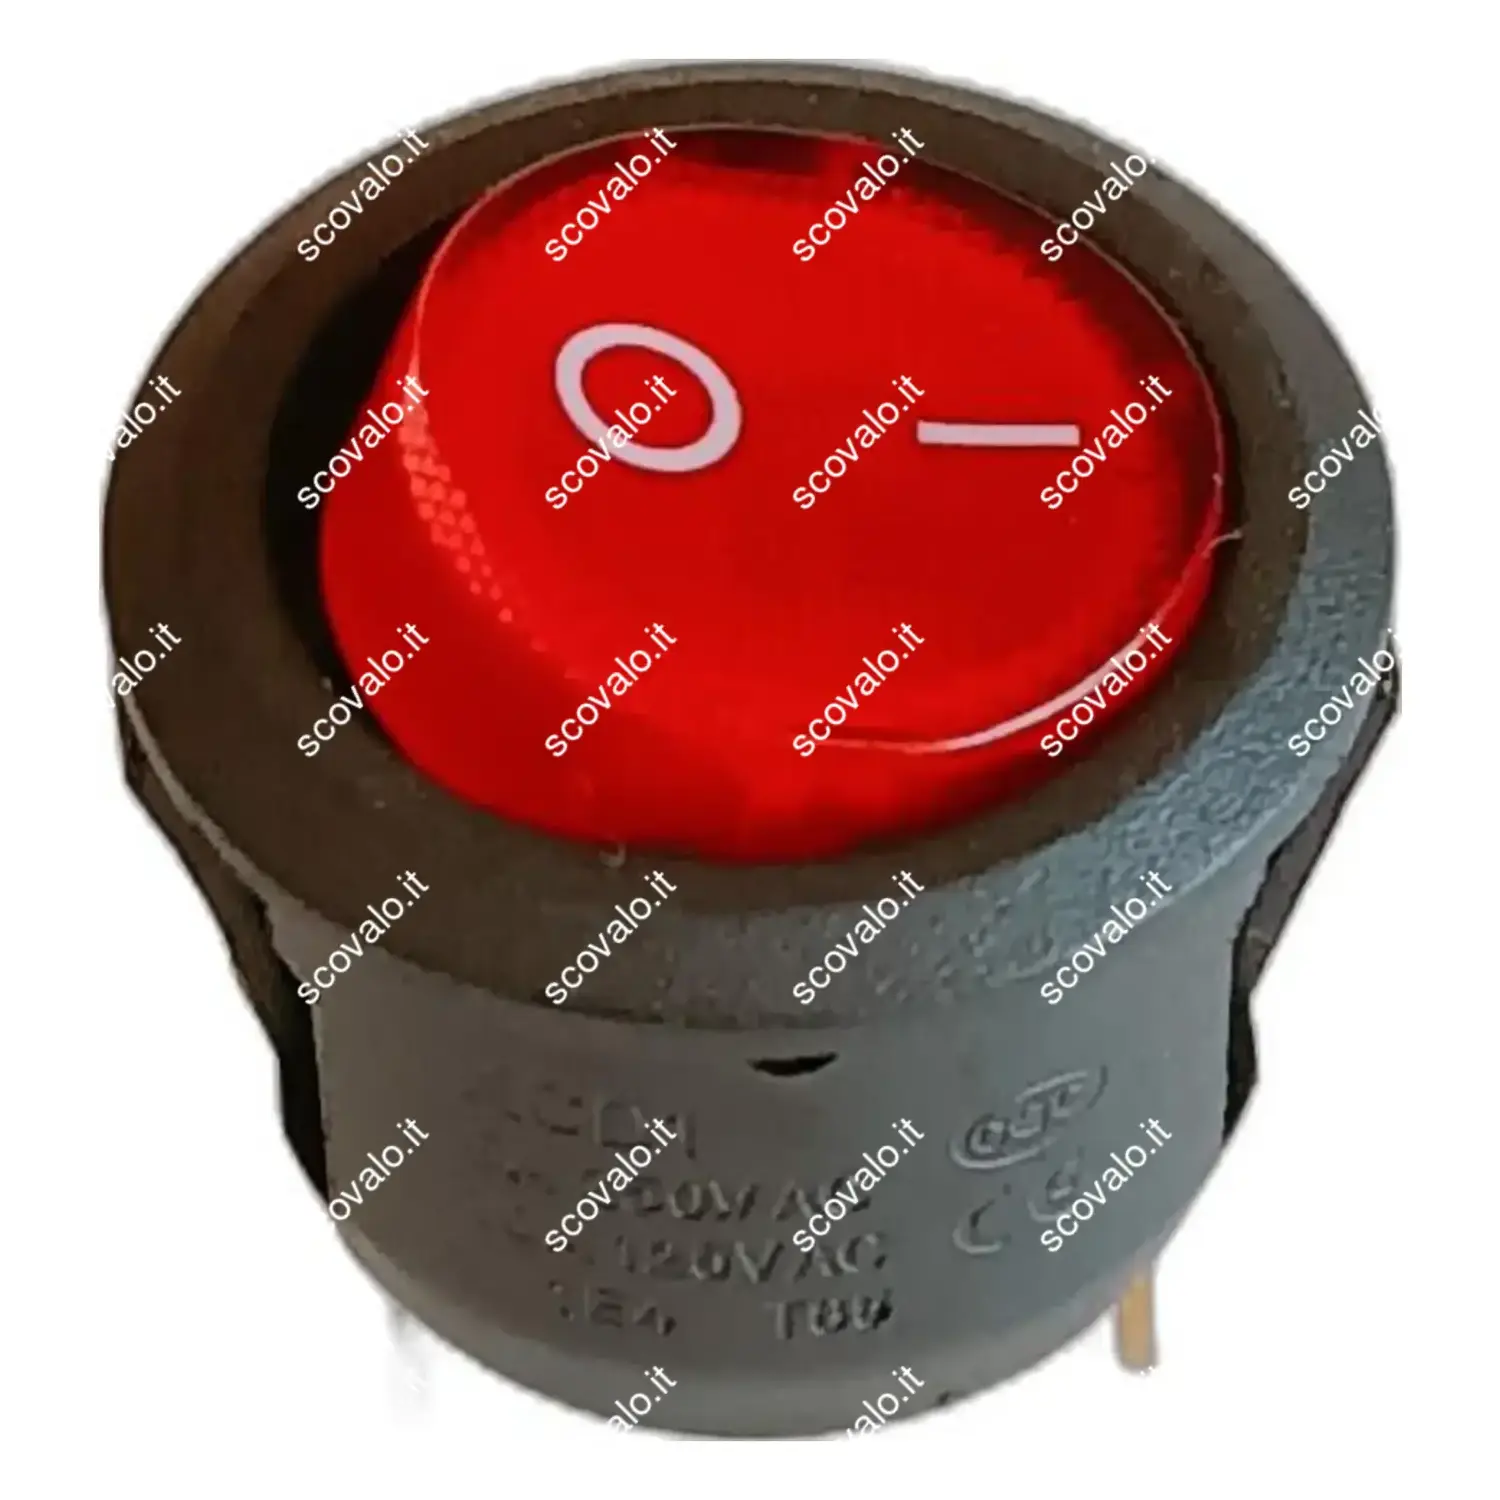 immagine interruttore luminoso rosso 0-1 macchina caffè faber accensione rosso